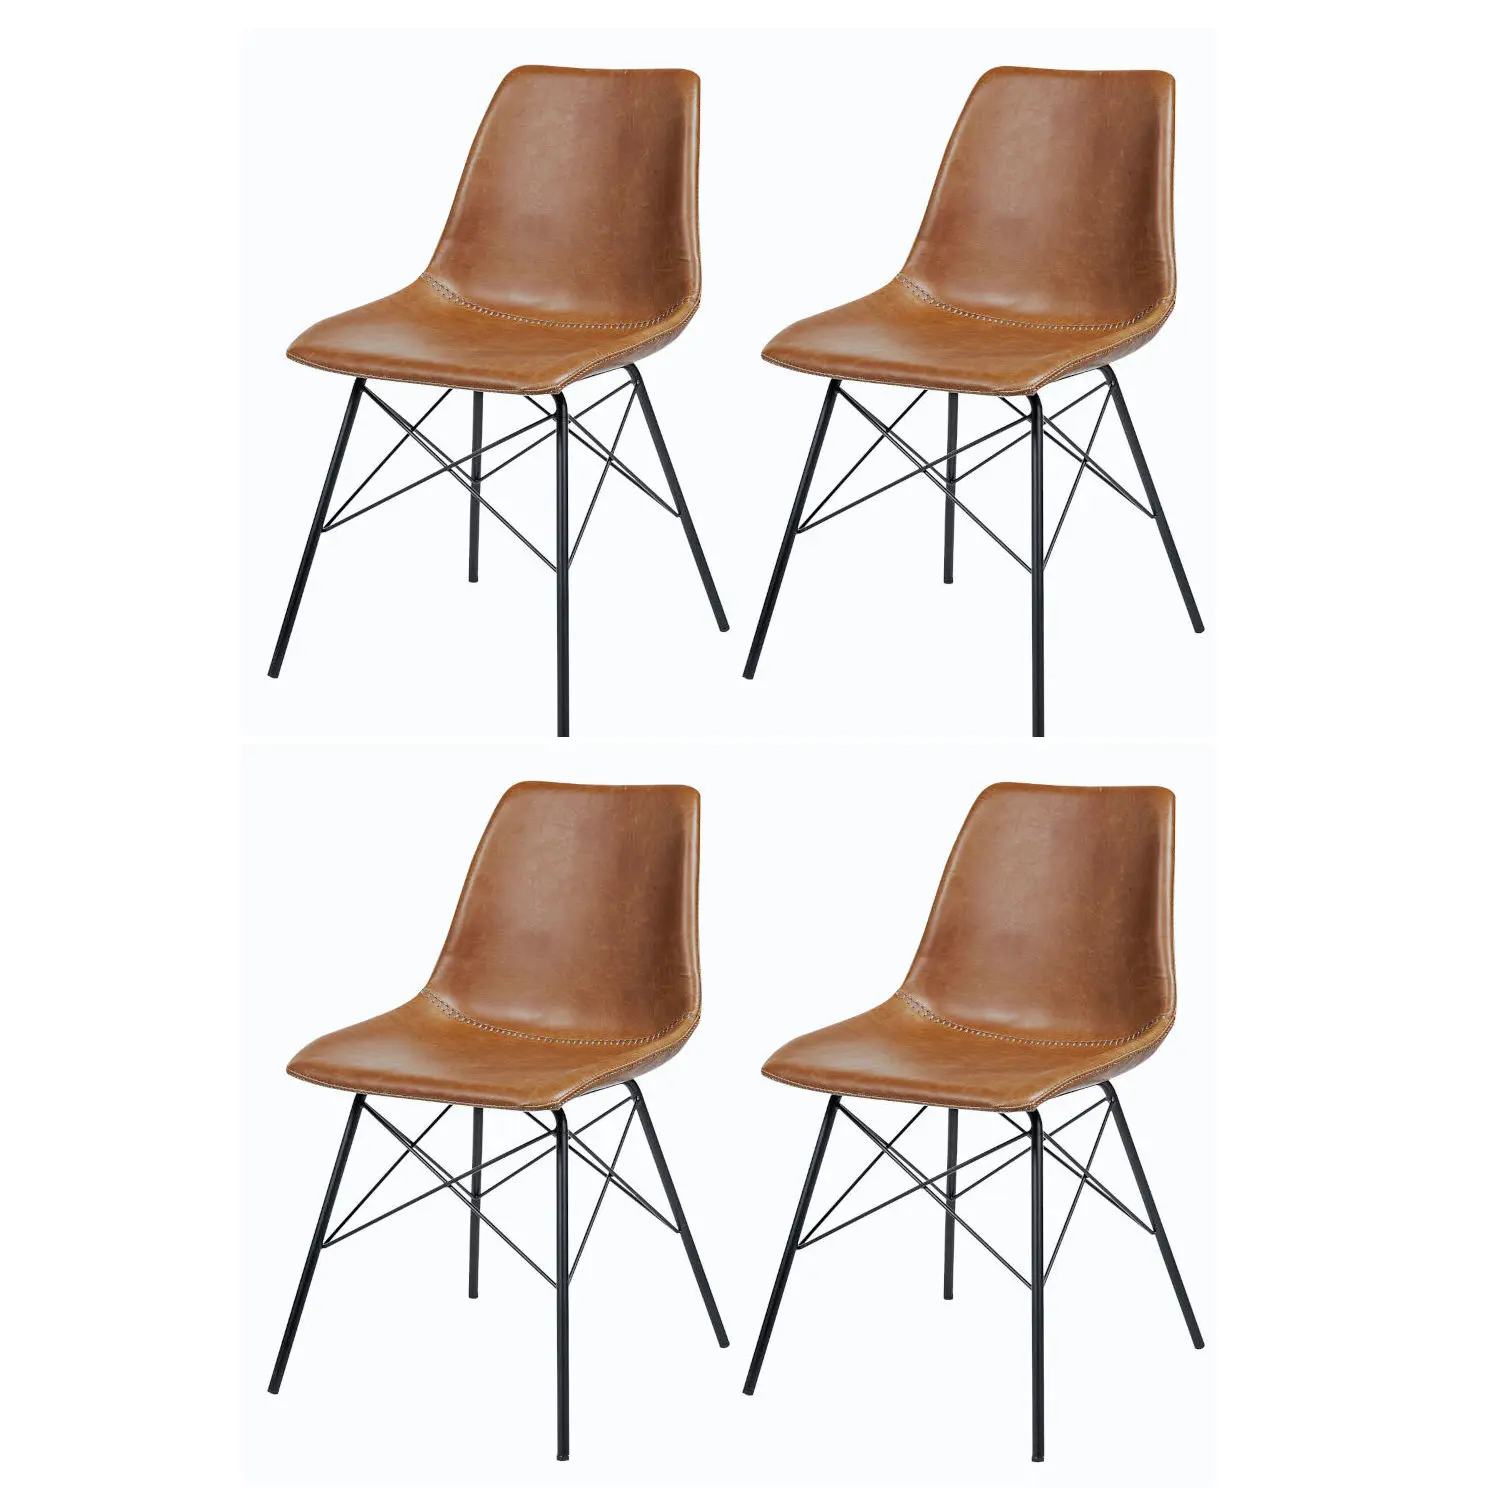 Super Sales Aktion für Modern Design Stuhl in angenehmem Vintage Braun-Ton